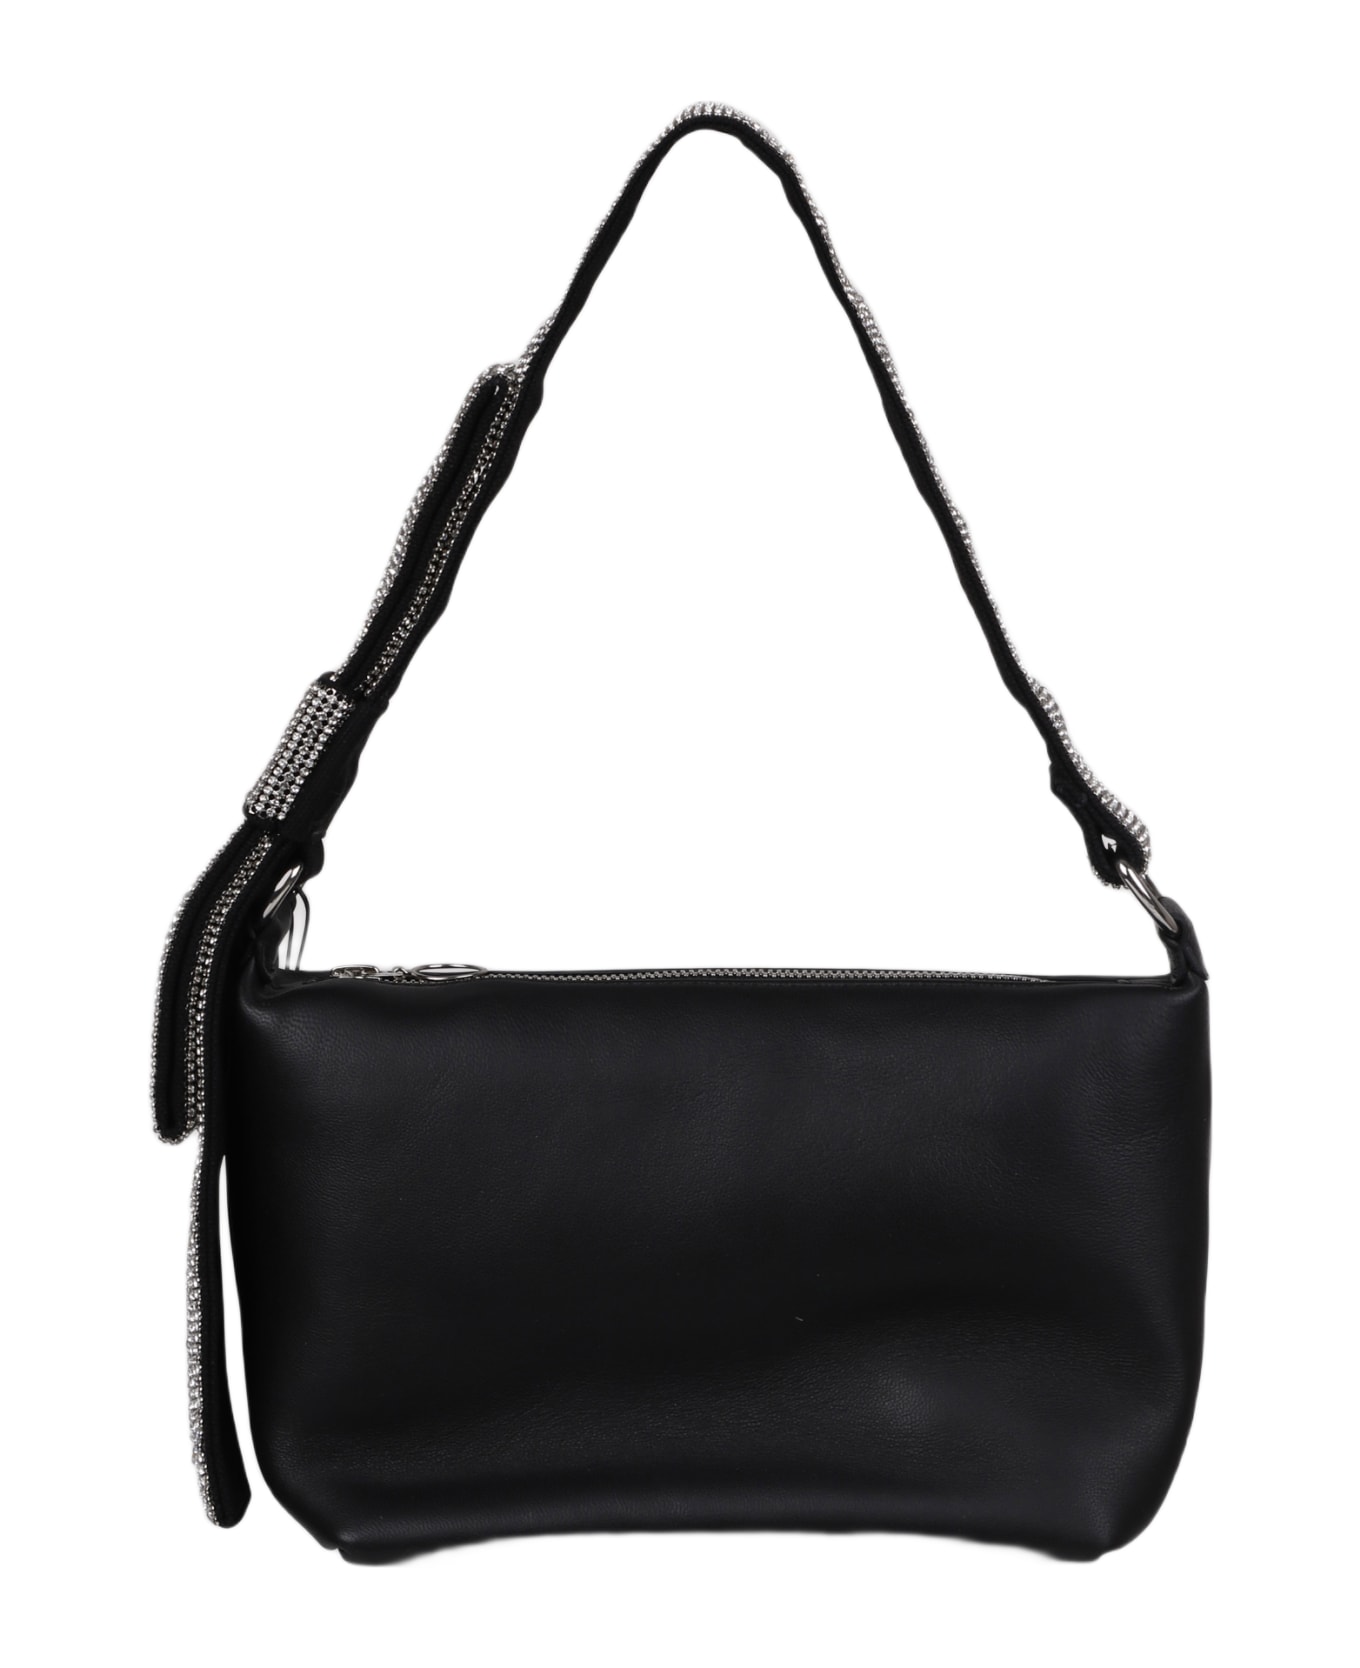 Kara Crystal Bow Leather Shoulder Bag